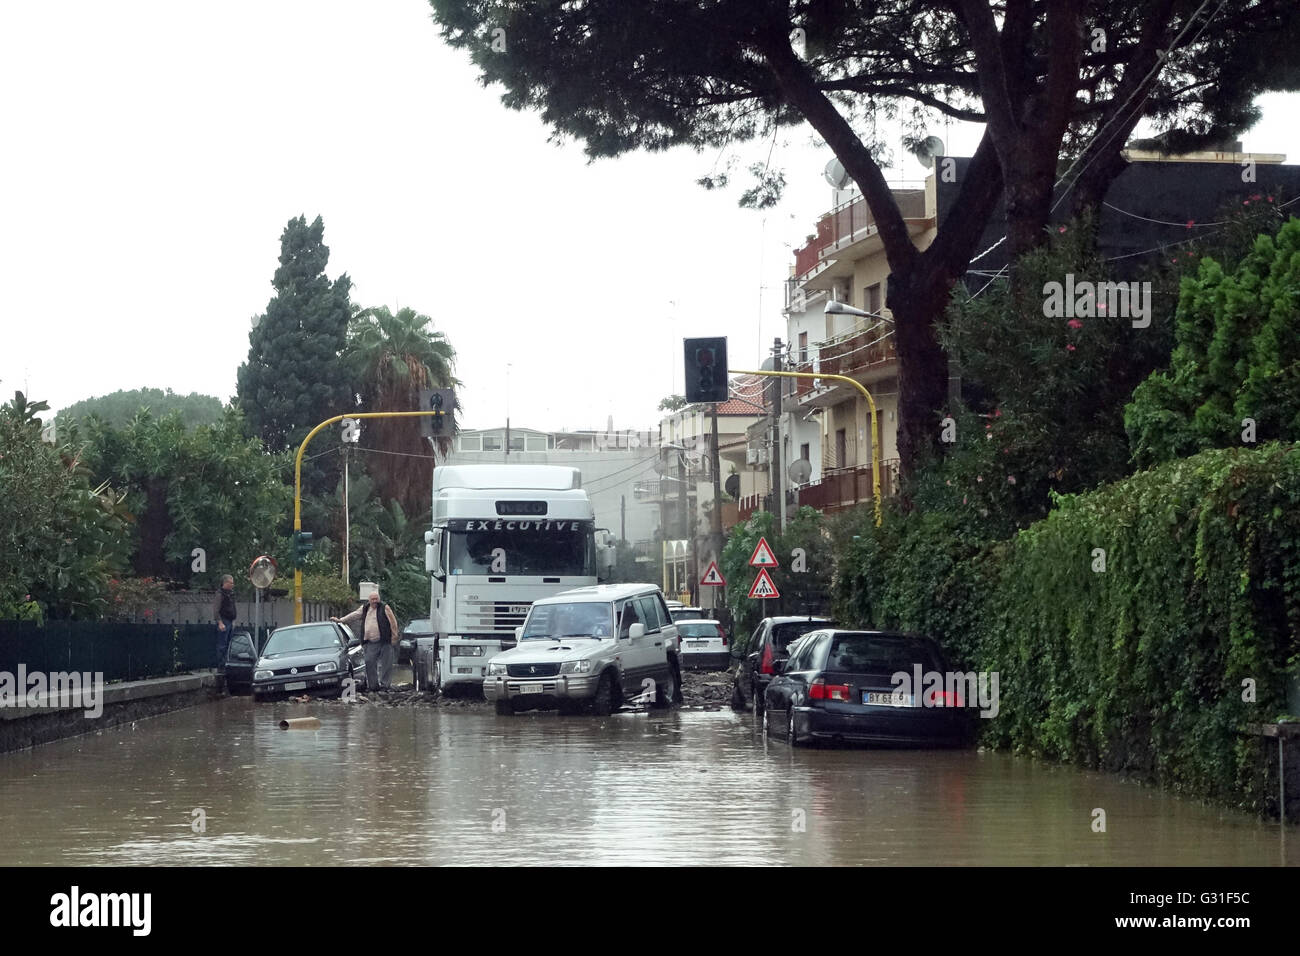 Aci Trezza, Italia, más inundados por el agua de lluvia y carreteras intransitables Foto de stock